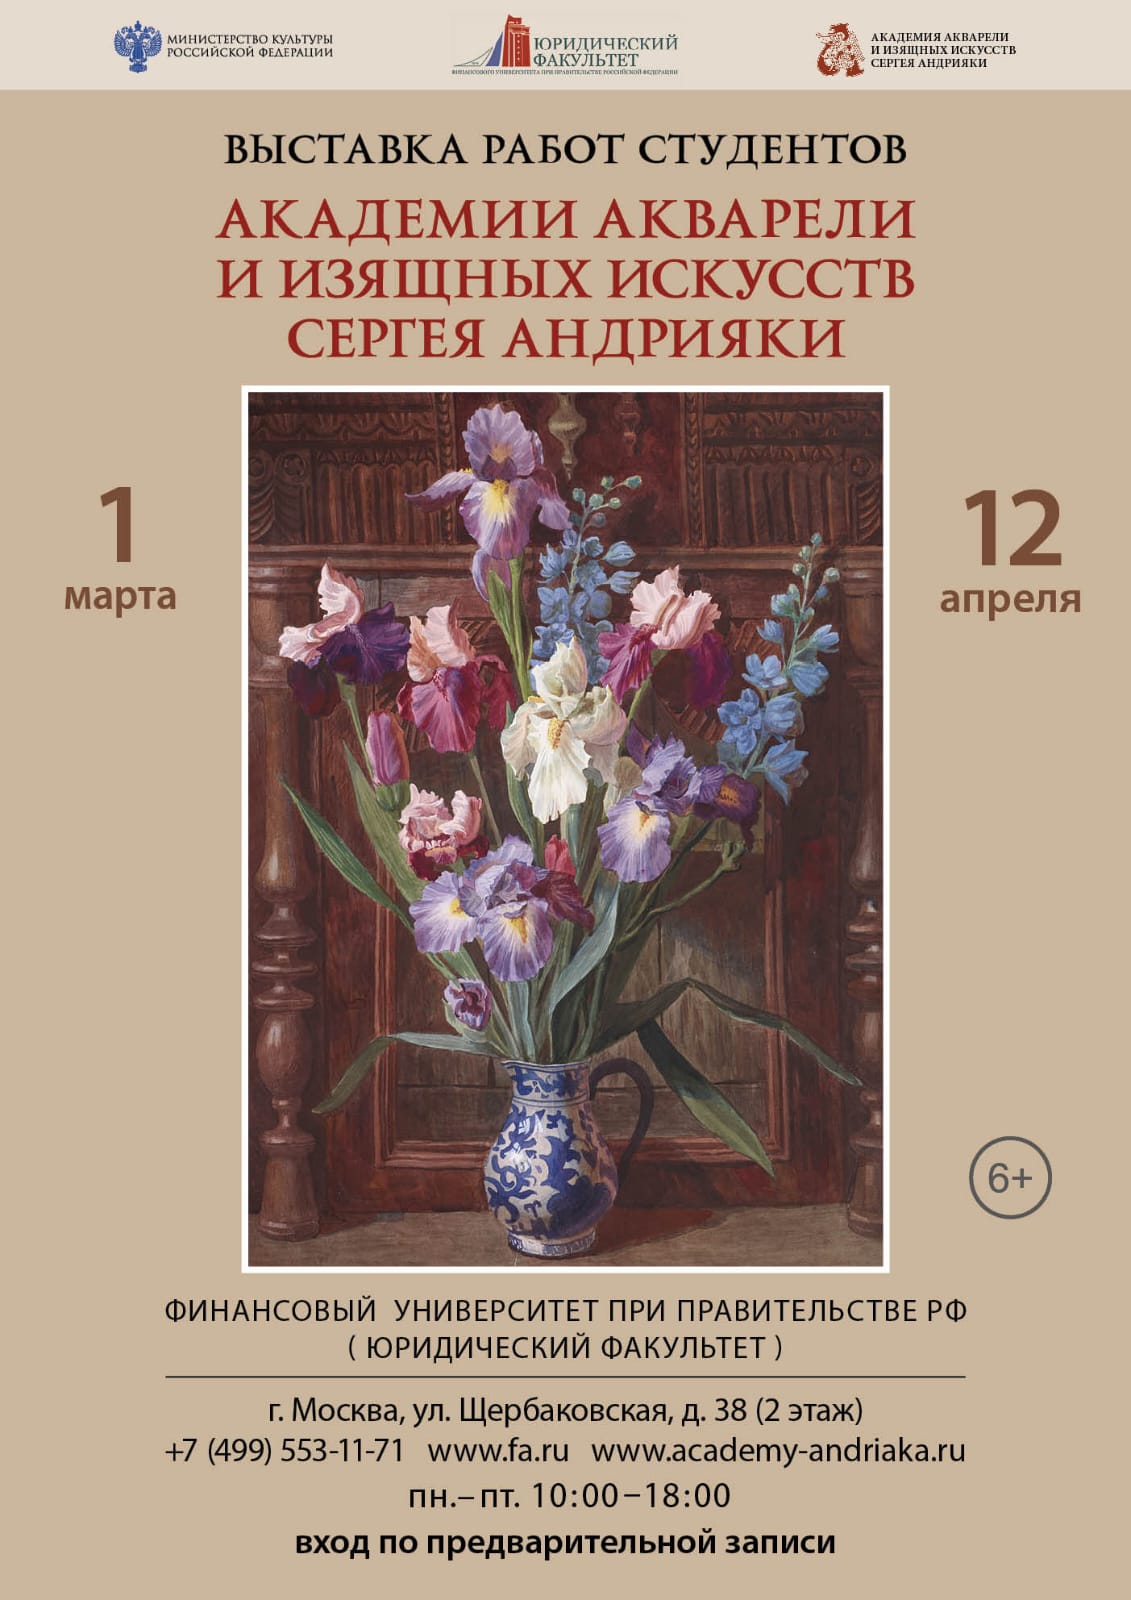 Выставка студентов Академии акварели и изящных искусств Сергея Андрияки